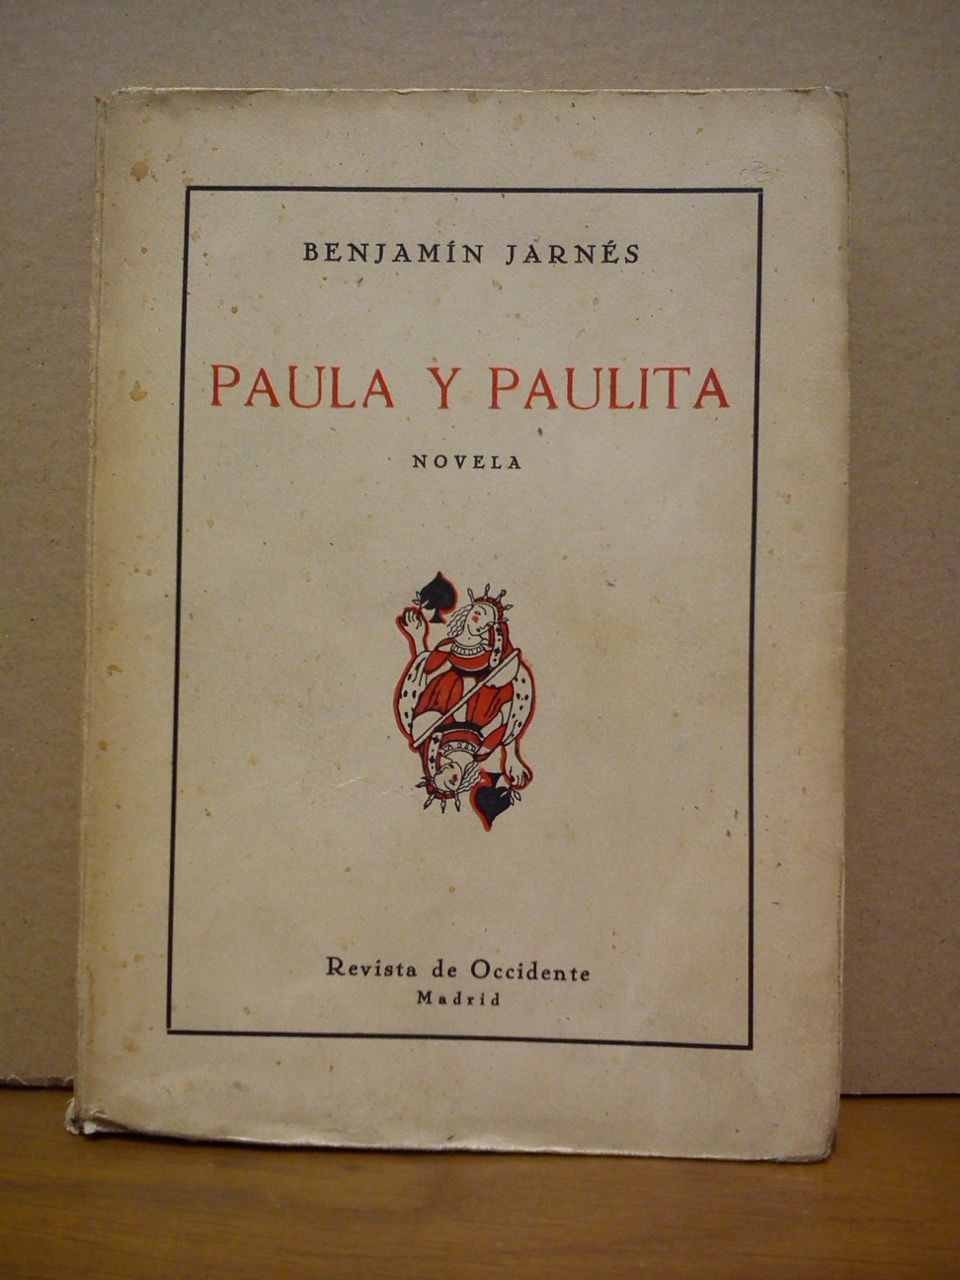 JARNES, Benjamn - Paula y Paulita. (Novela)